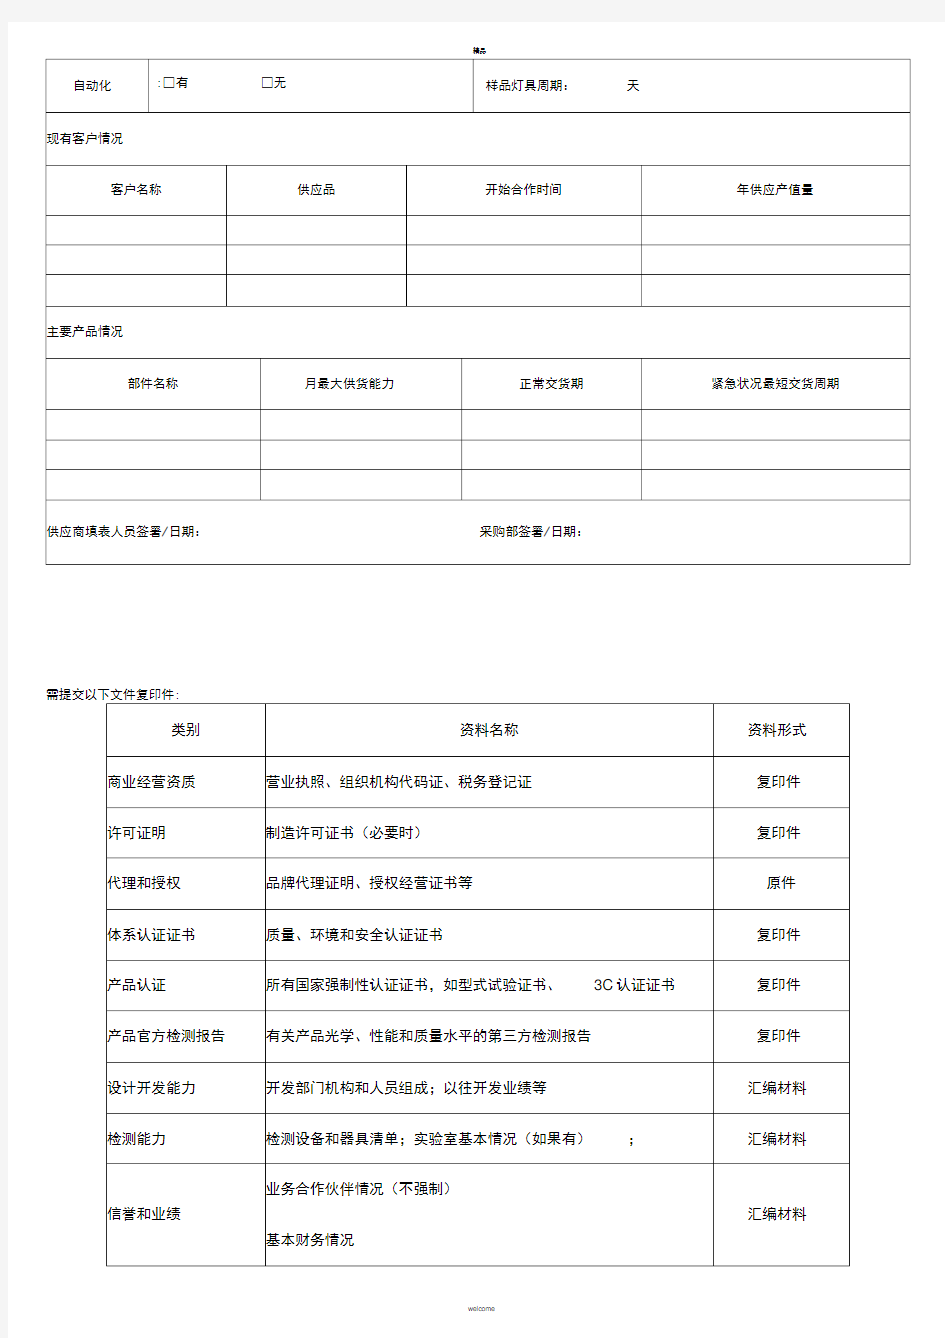 供应商管理表格-供应商考核表-供应商基本信息登记表